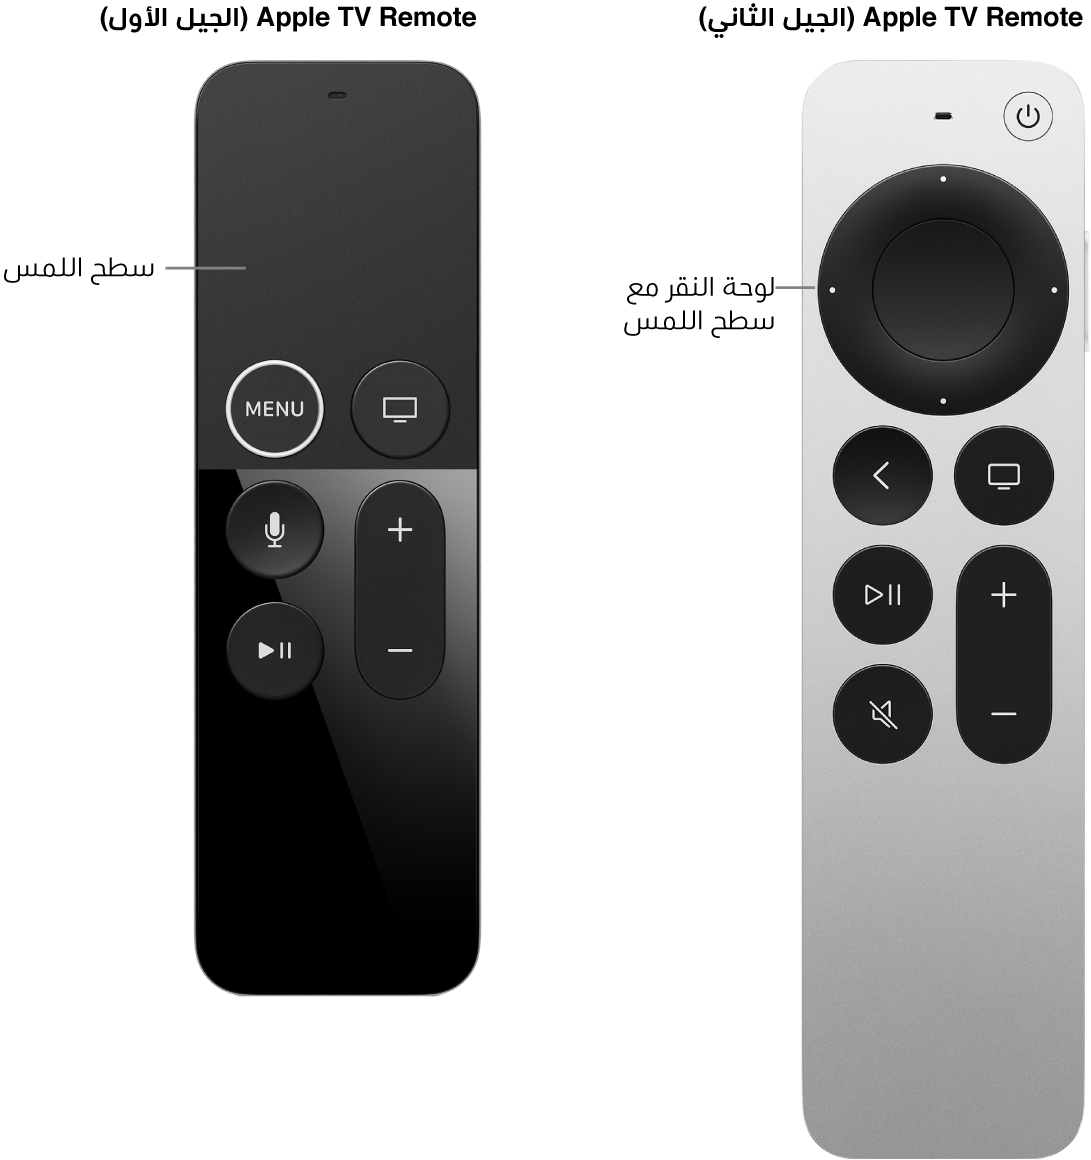 ‏Apple TV Remote (الجيل الثاني) المزود بلوحة النقر و Apple TV Remote (الجيل الأول) المزود بسطح اللمس